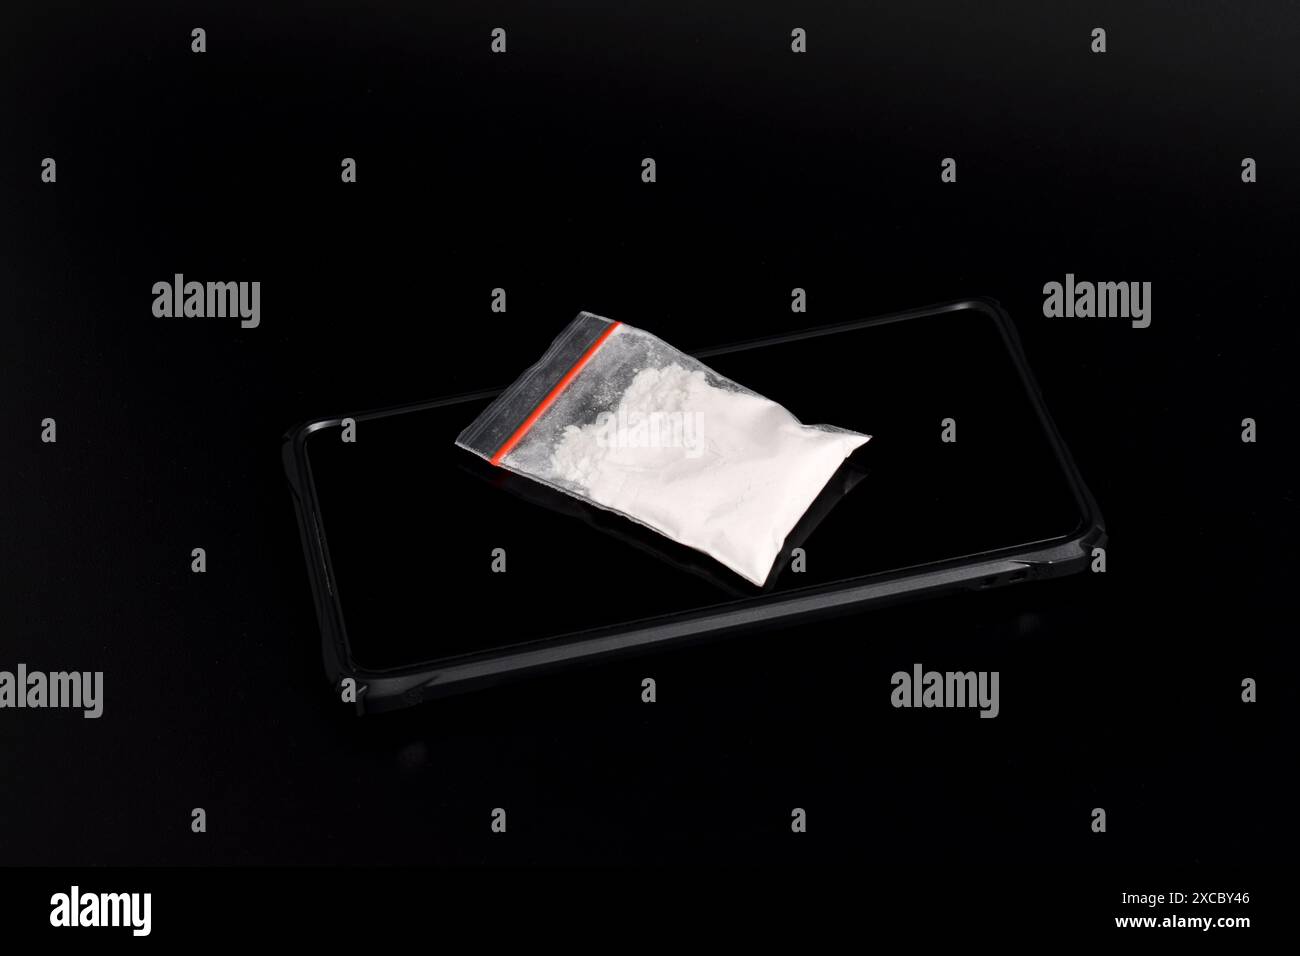 Cocaina in una confezione di plastica su uno smartphone isolato su sfondo nero. Illustrazione di sostanze stupefacenti illegali, narcotici Foto Stock